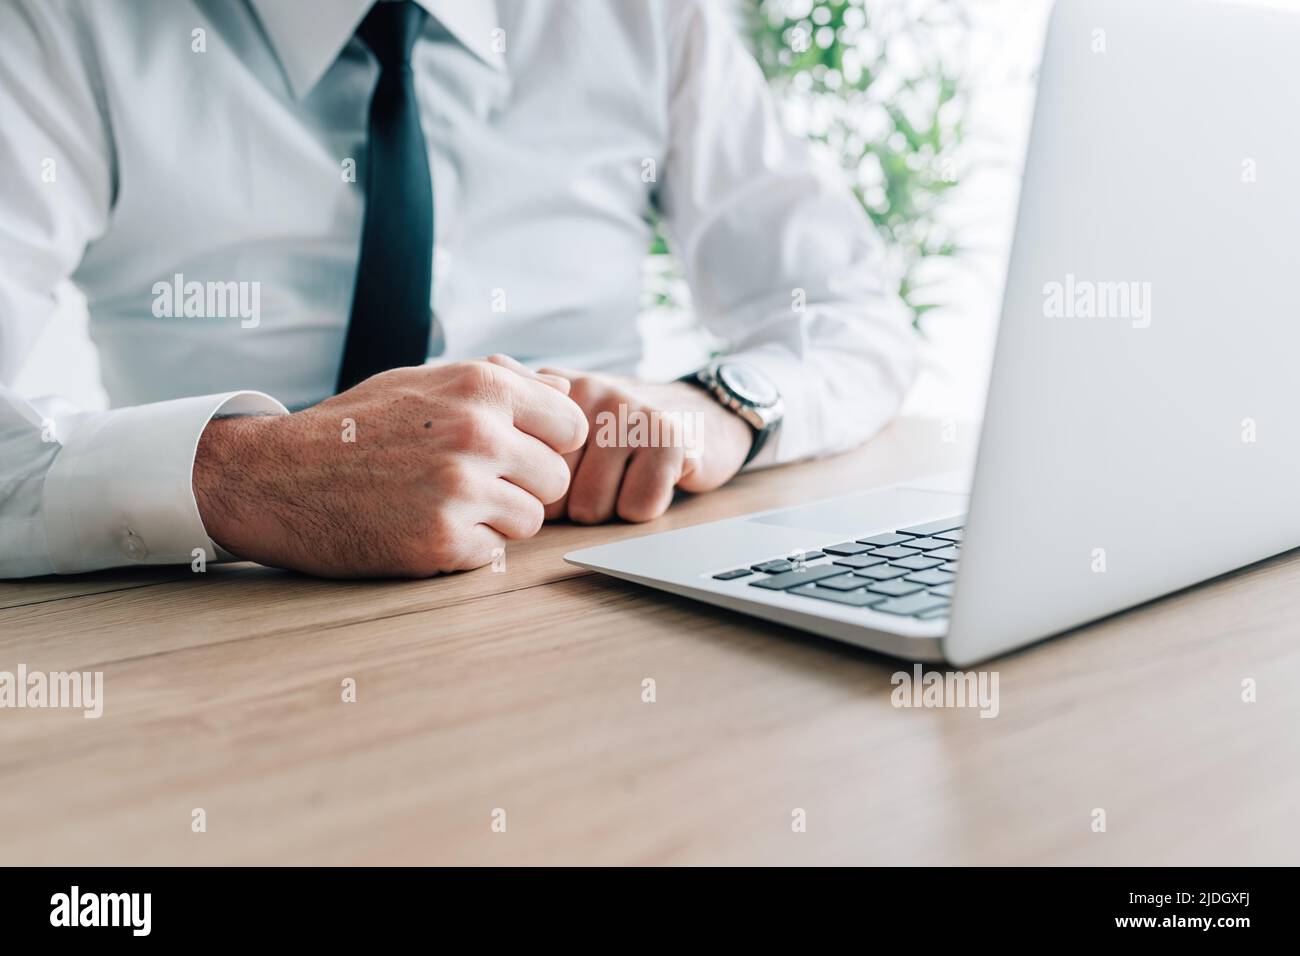 Un homme d'affaires claque les poings devant un ordinateur portable au bureau, une attention sélective Banque D'Images